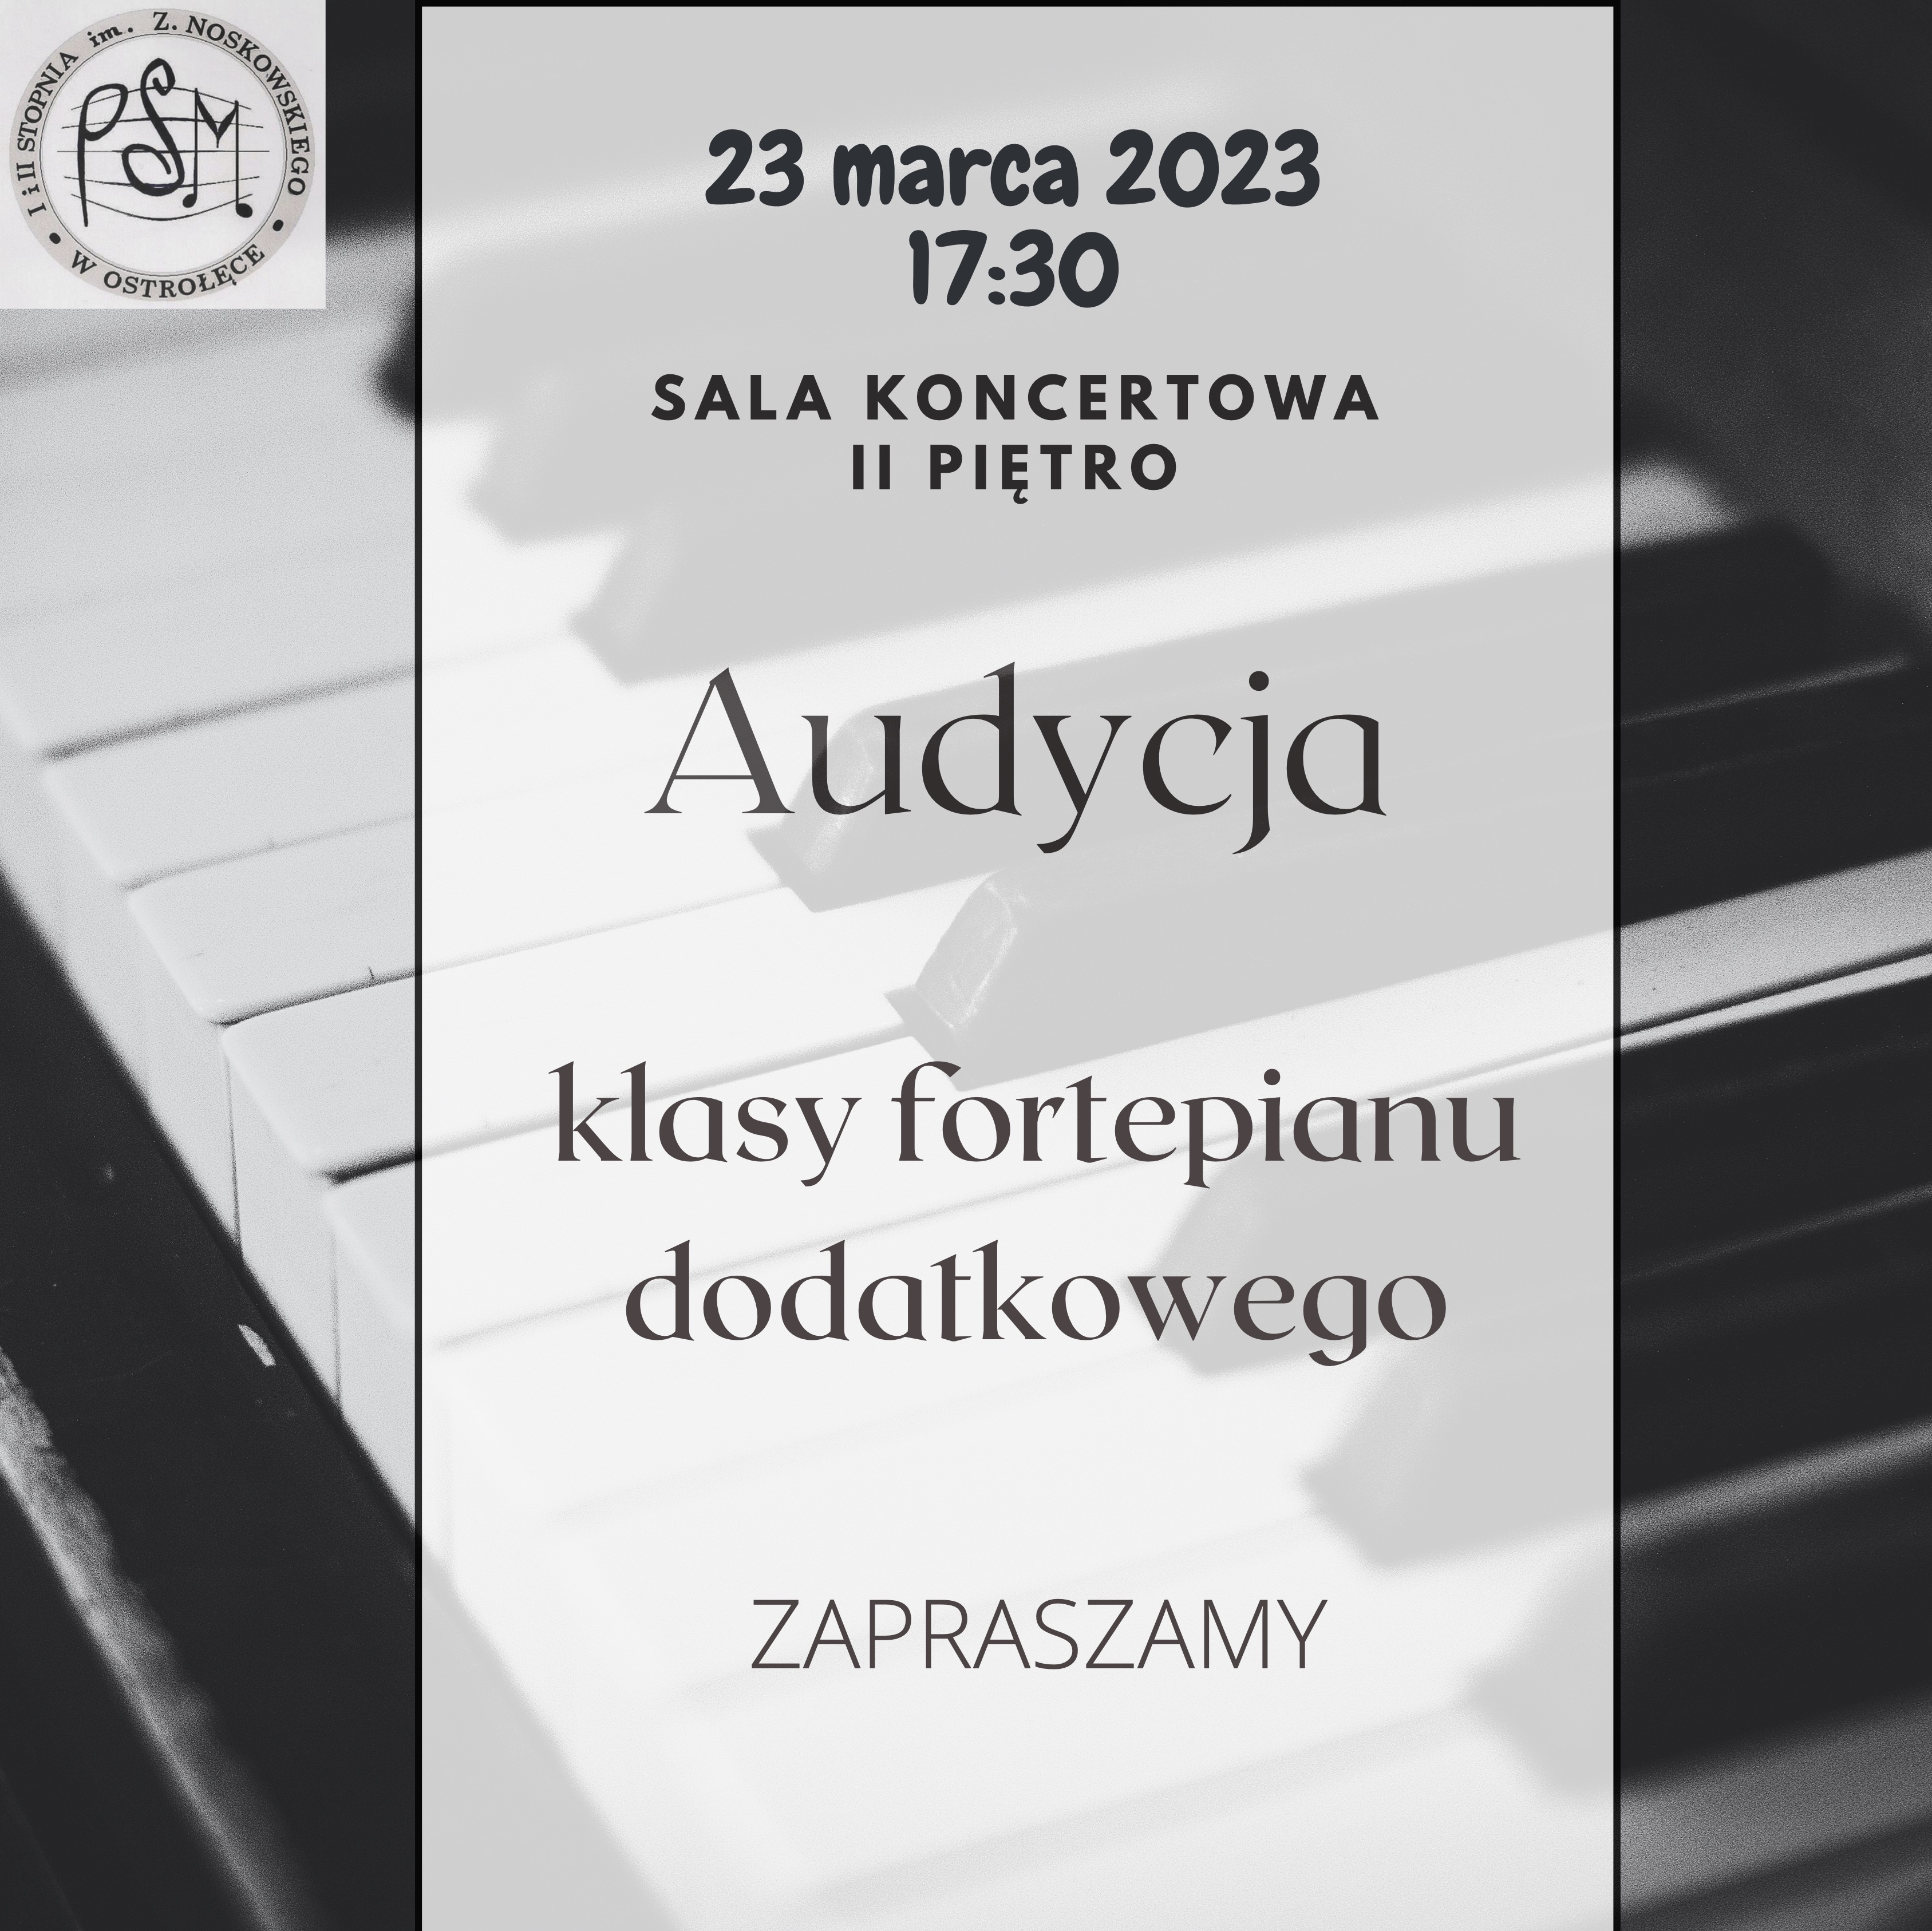 Plakat z klawiaturą fortepianu w tle o treści: 23 marca 2023 17:30 SALA KONCERTOWA II PIETRO Audycja klasy fortepianu dodatkowego ZAPRASZAMY